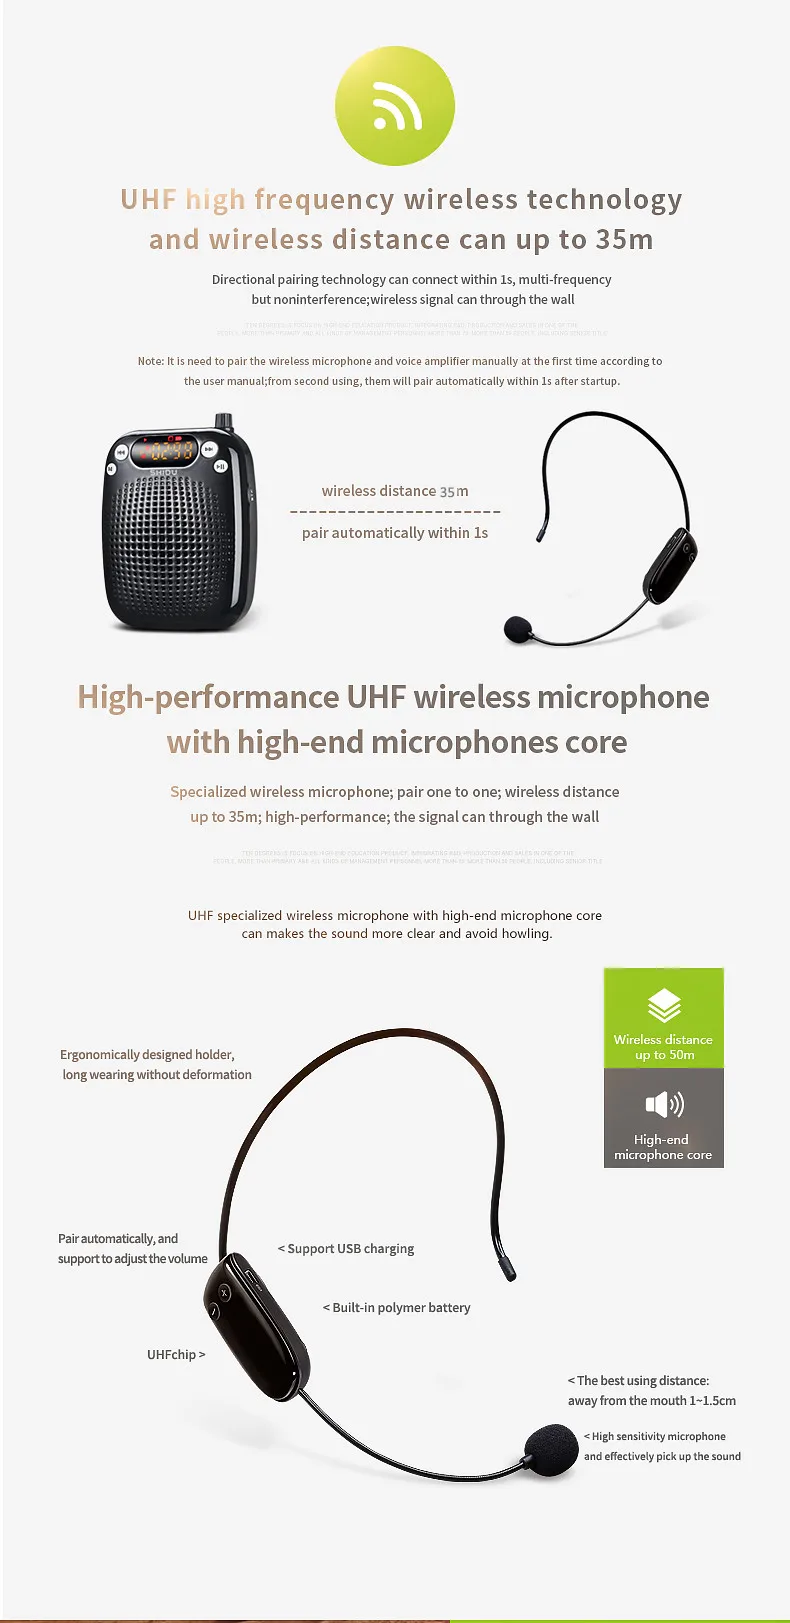 10 Вт UHF беспроводной голосовой усилитель супер голосовое покрытие с высококлассным микрофоном для школы, супер рынка, встречи, обучения и т. Д